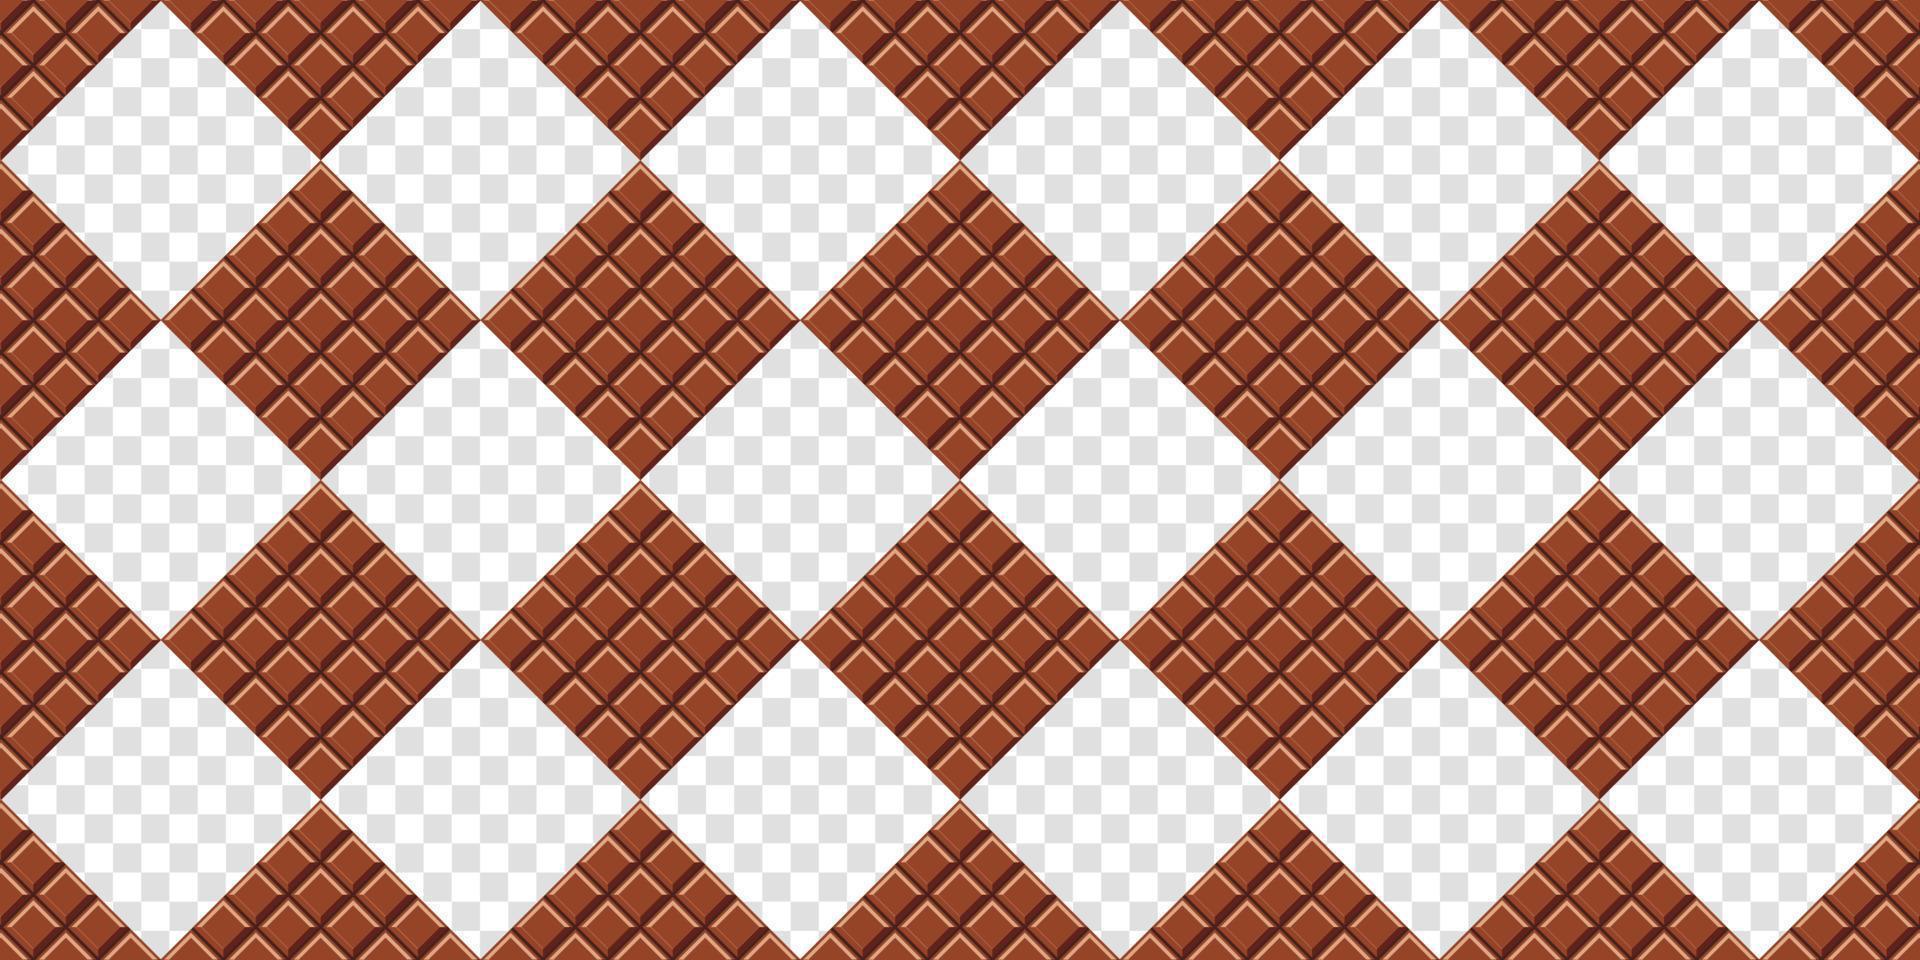 patroon van chocoladerepen tegen. chocoladereep naadloos patroon. vector illustratie